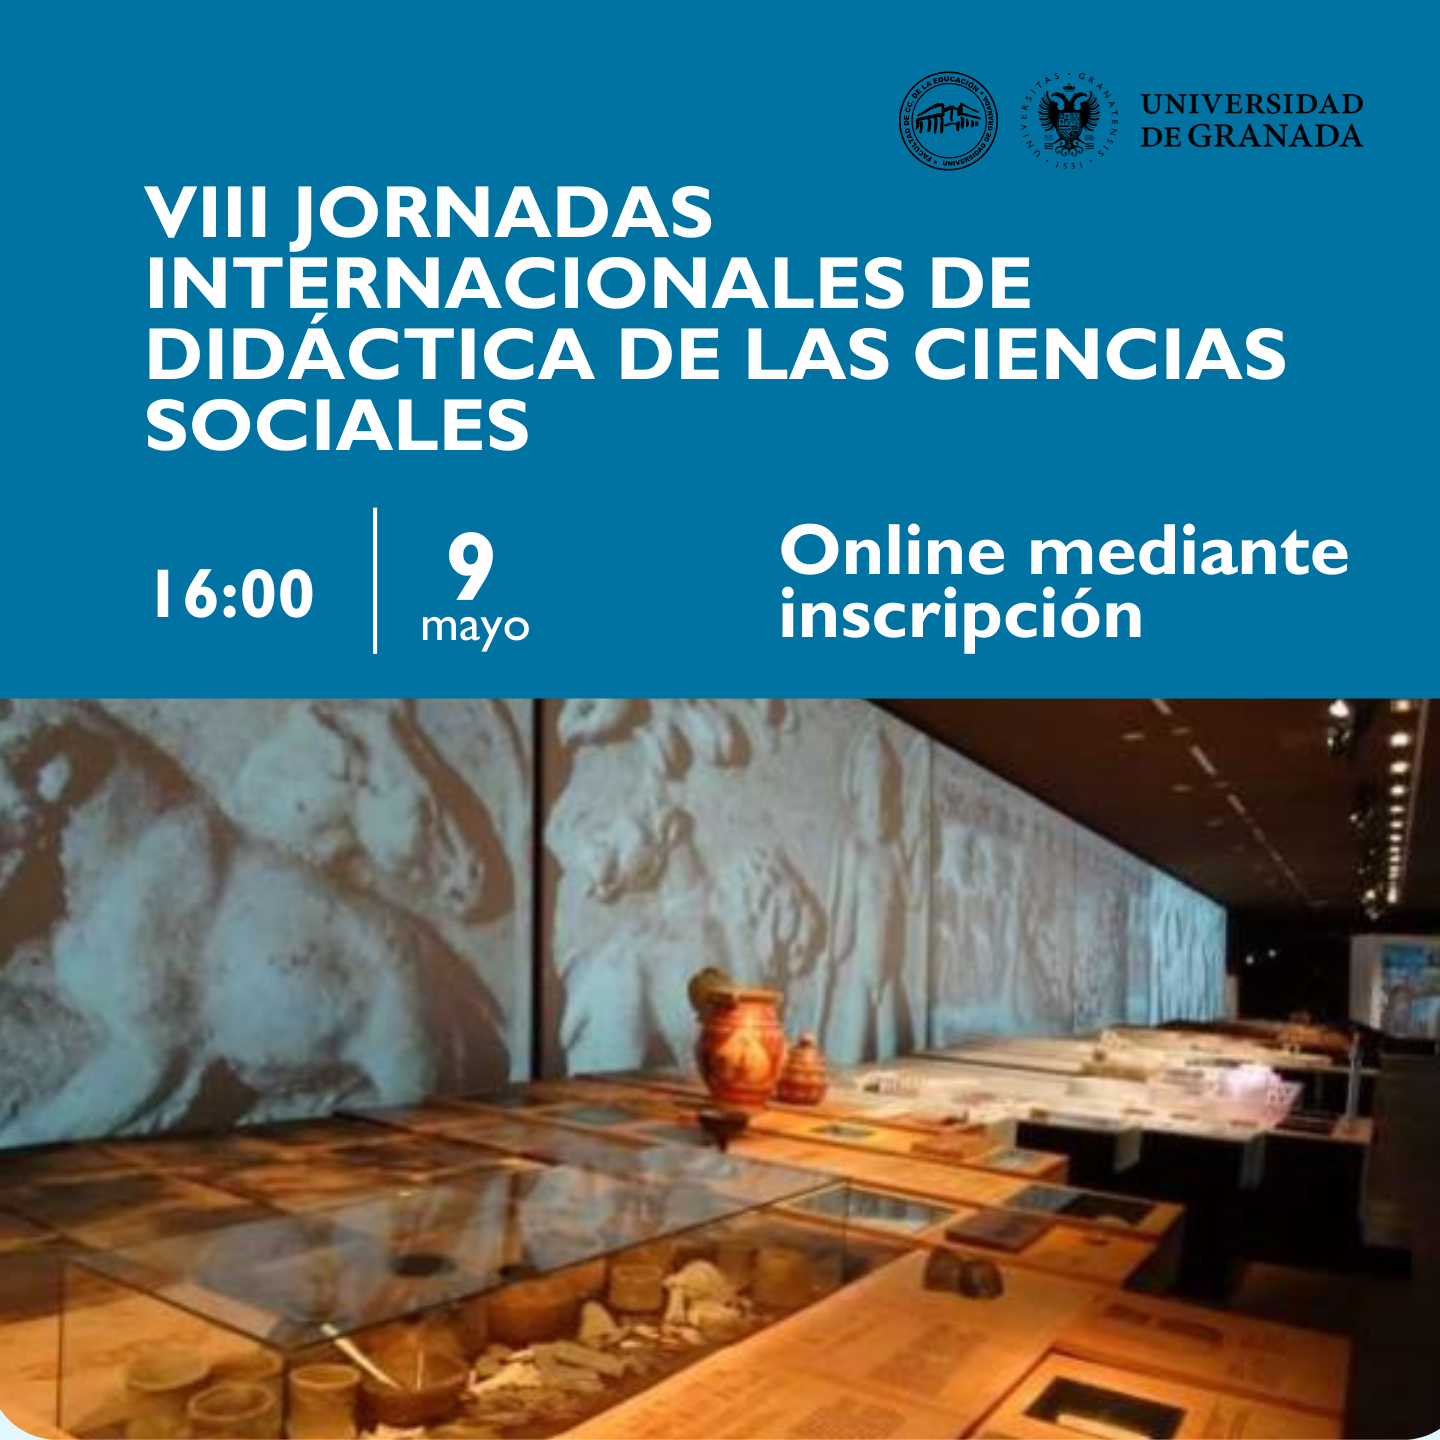 VIII Jornadas Internacionales de Didáctica de las Ciencias Sociales